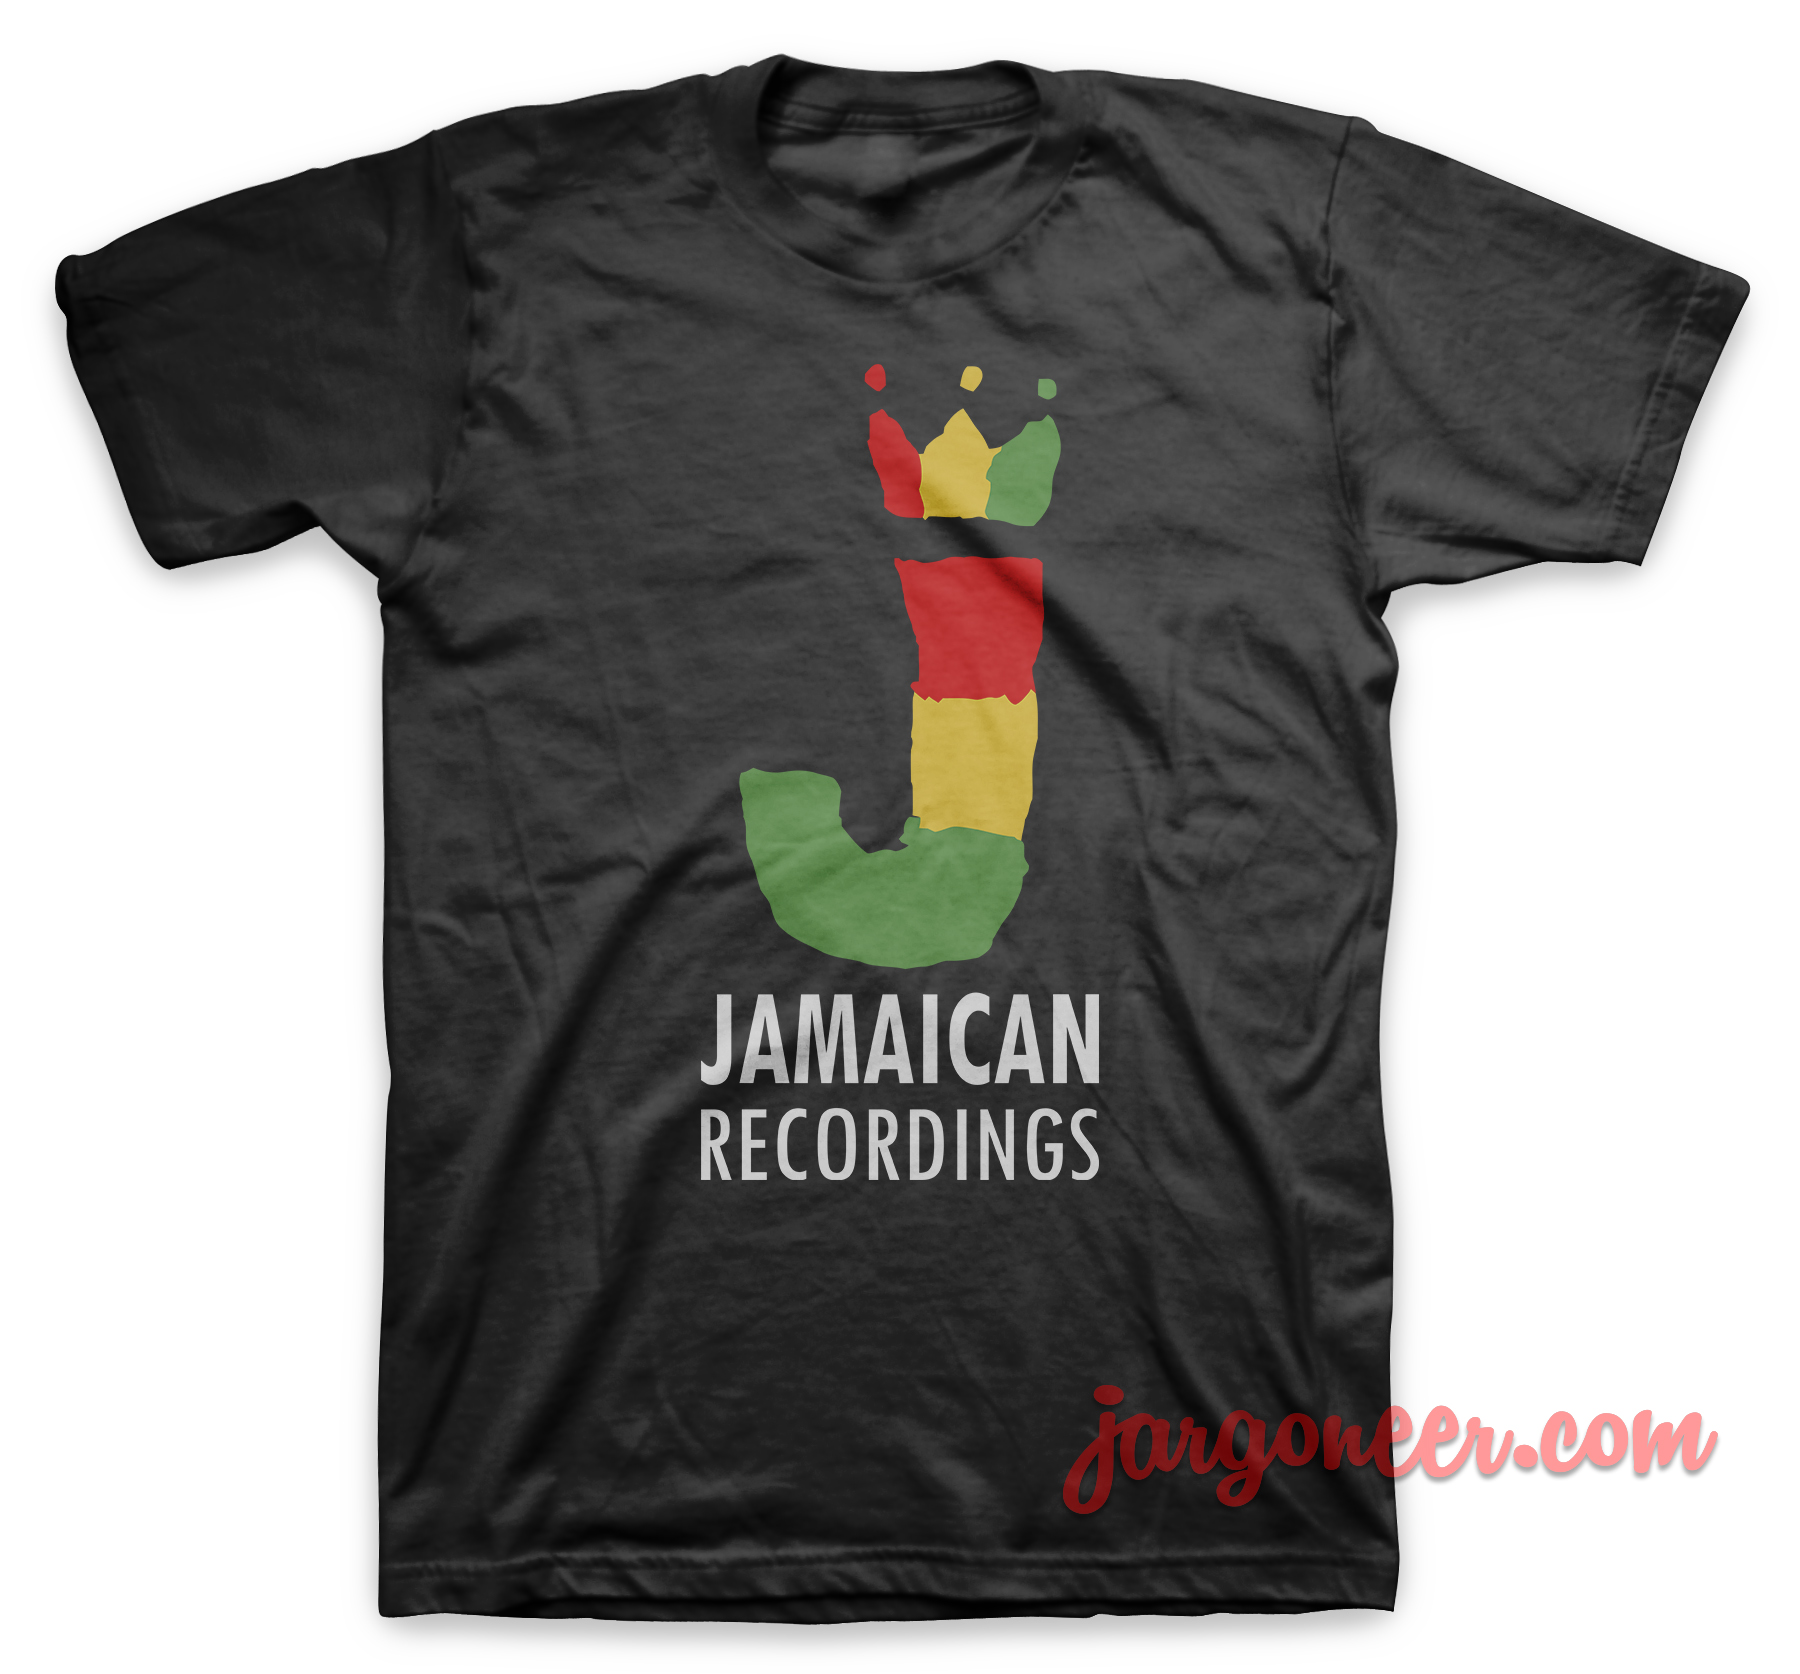 Jamaican Recordings Black T Shirt - Shop Unique Graphic Cool Shirt Designs